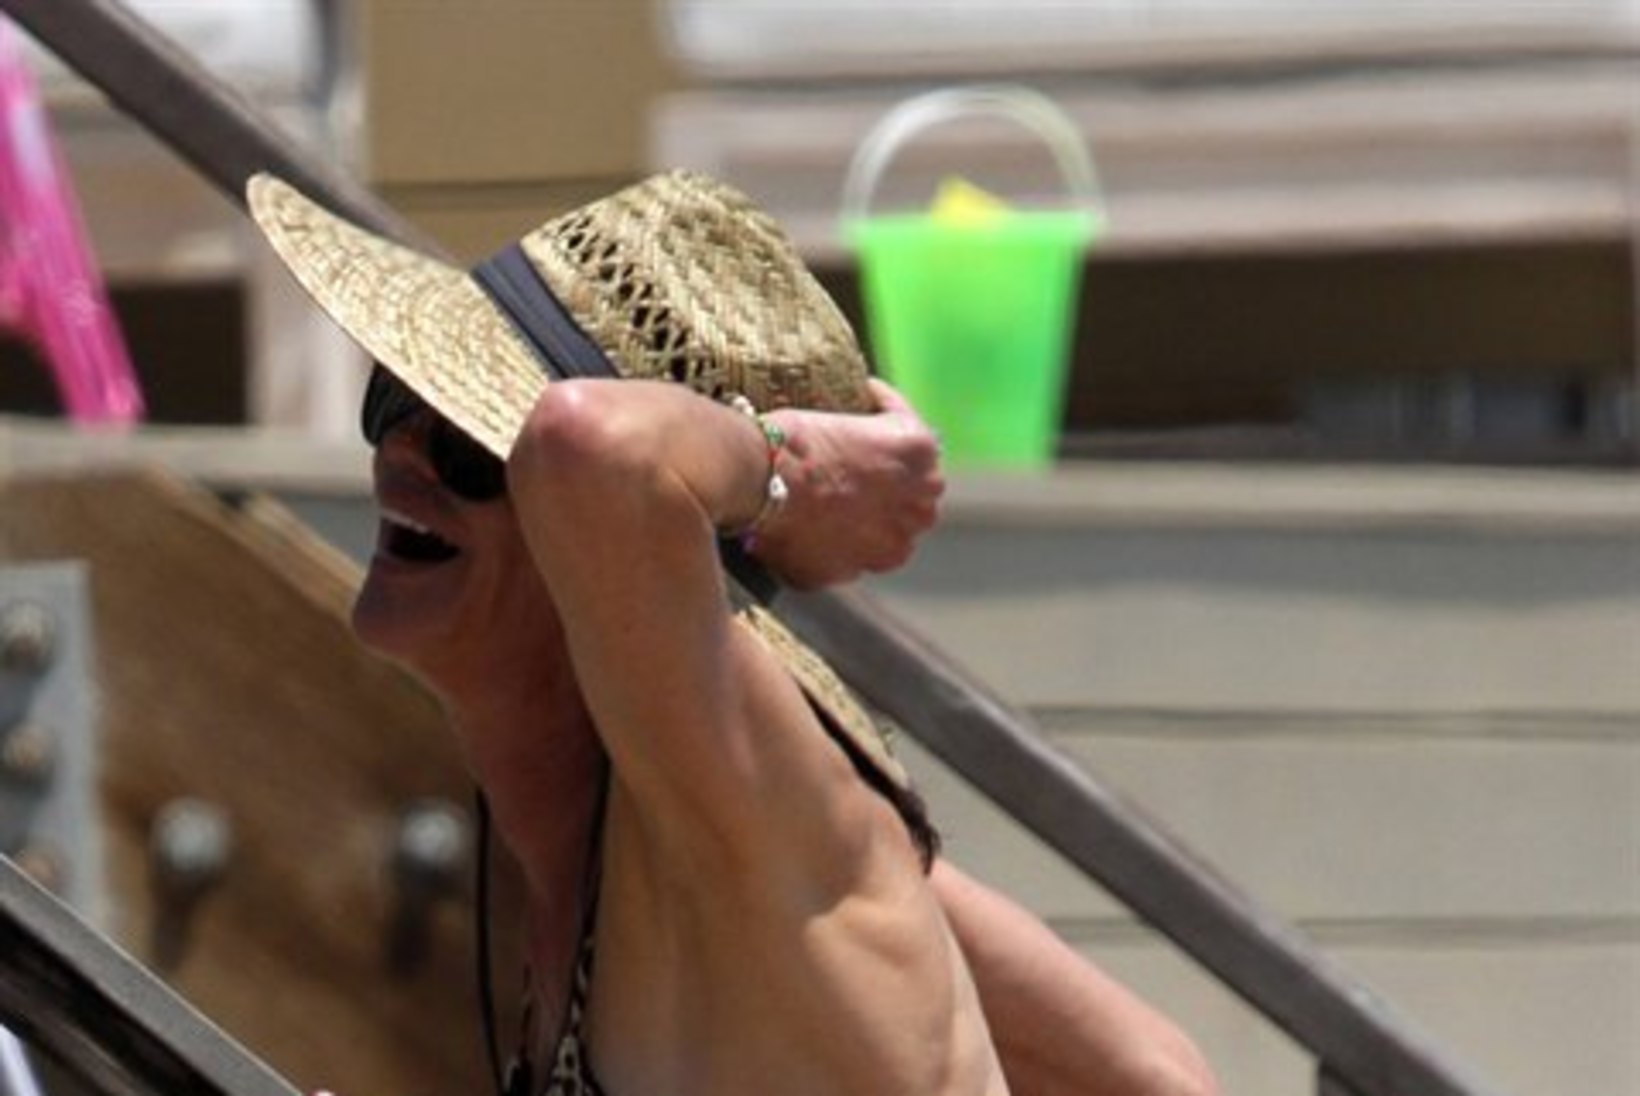 FOTOD: kortsus nahaga Janice Dickinson võttis rannas seksikaid poose